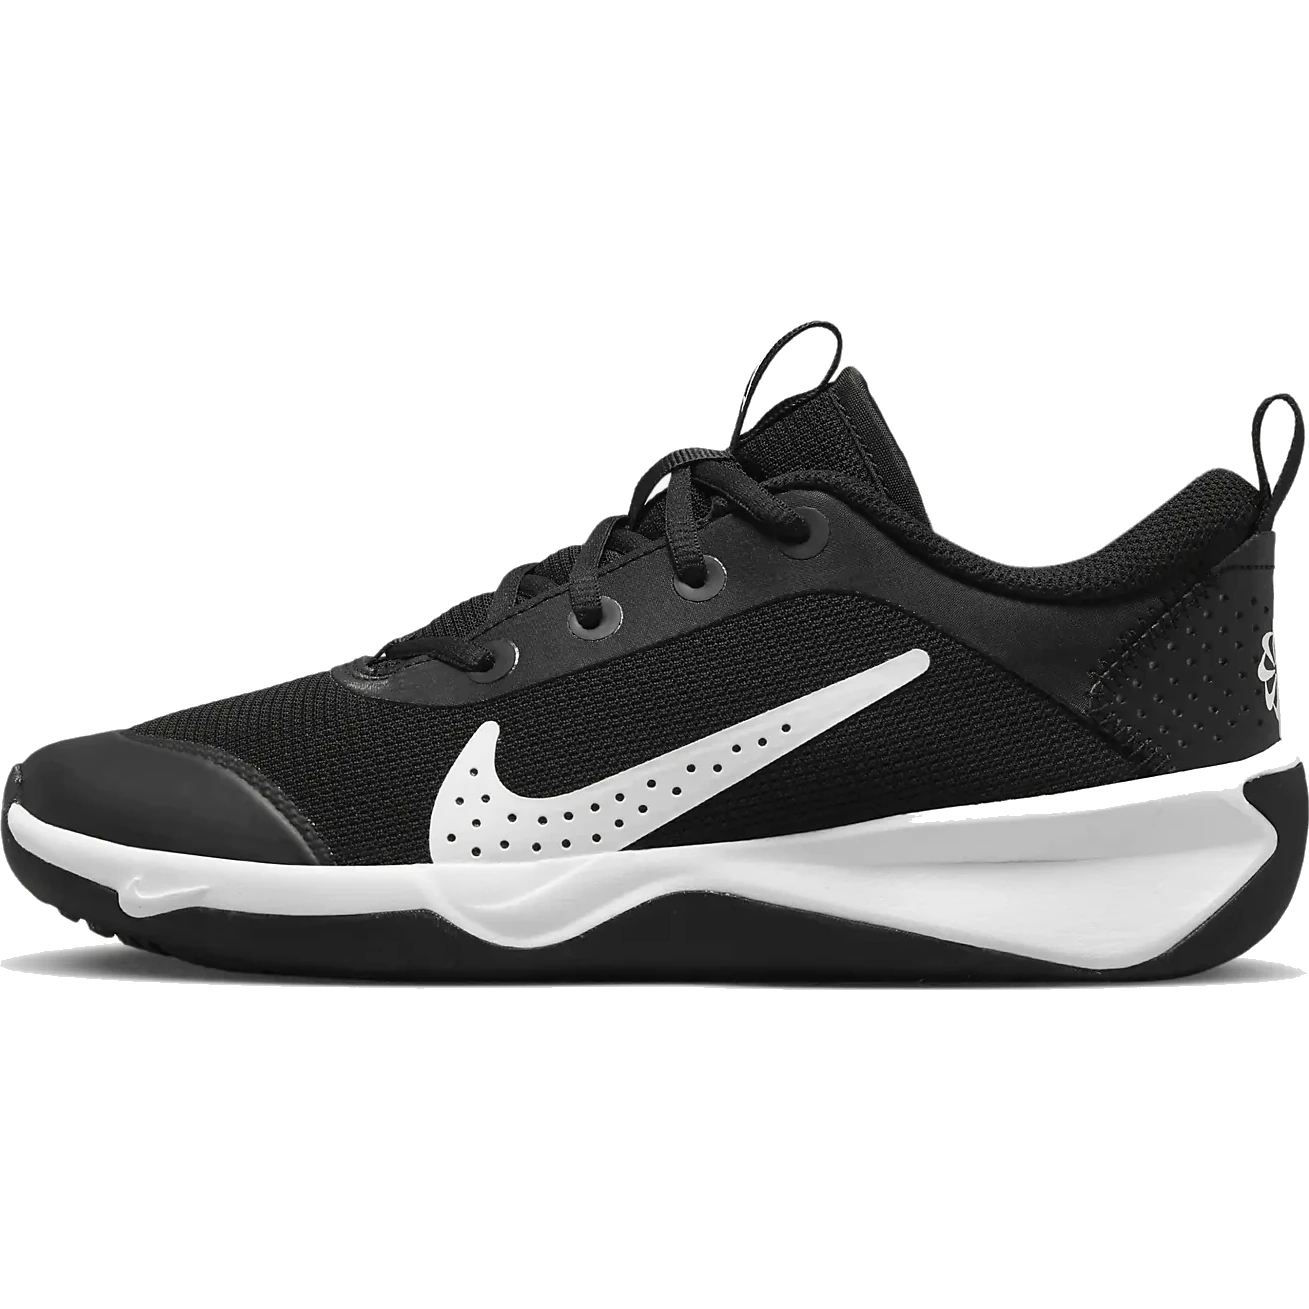 Immagine di Nike Scarpe Fitness Bambini - Omni Multi-Court - nero/bianco DM9027-002